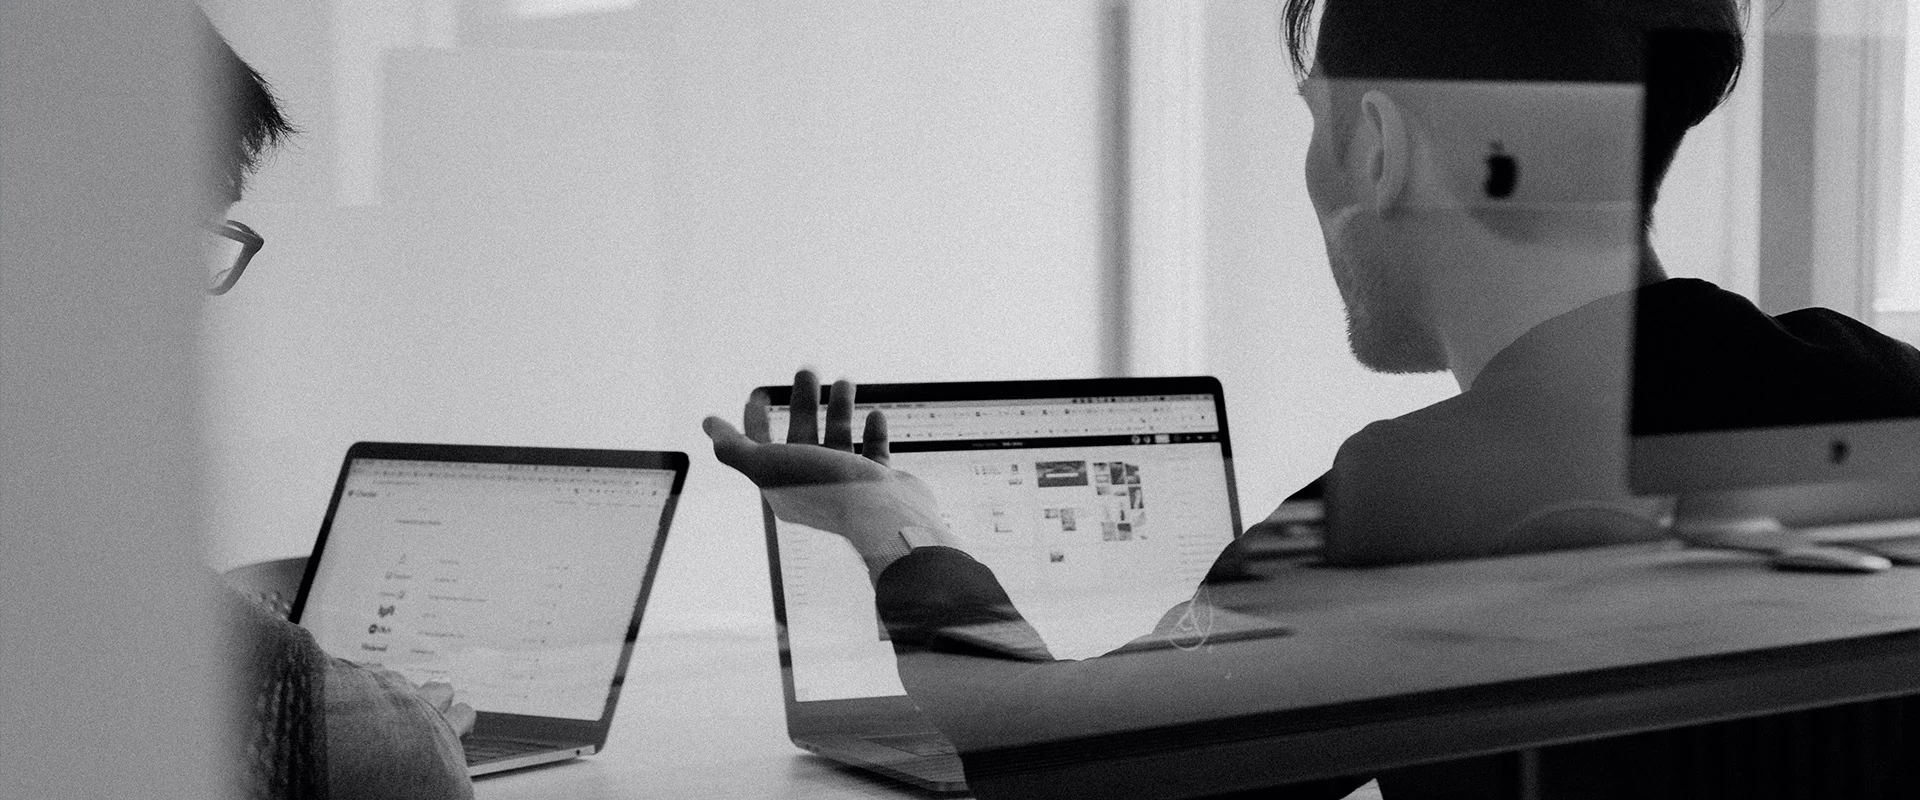 Ein Schwarz-Weiß-Foto, das zwei Personen zeigt, die mit Laptops Wachstumsmarketing-Aufgaben erledigen.